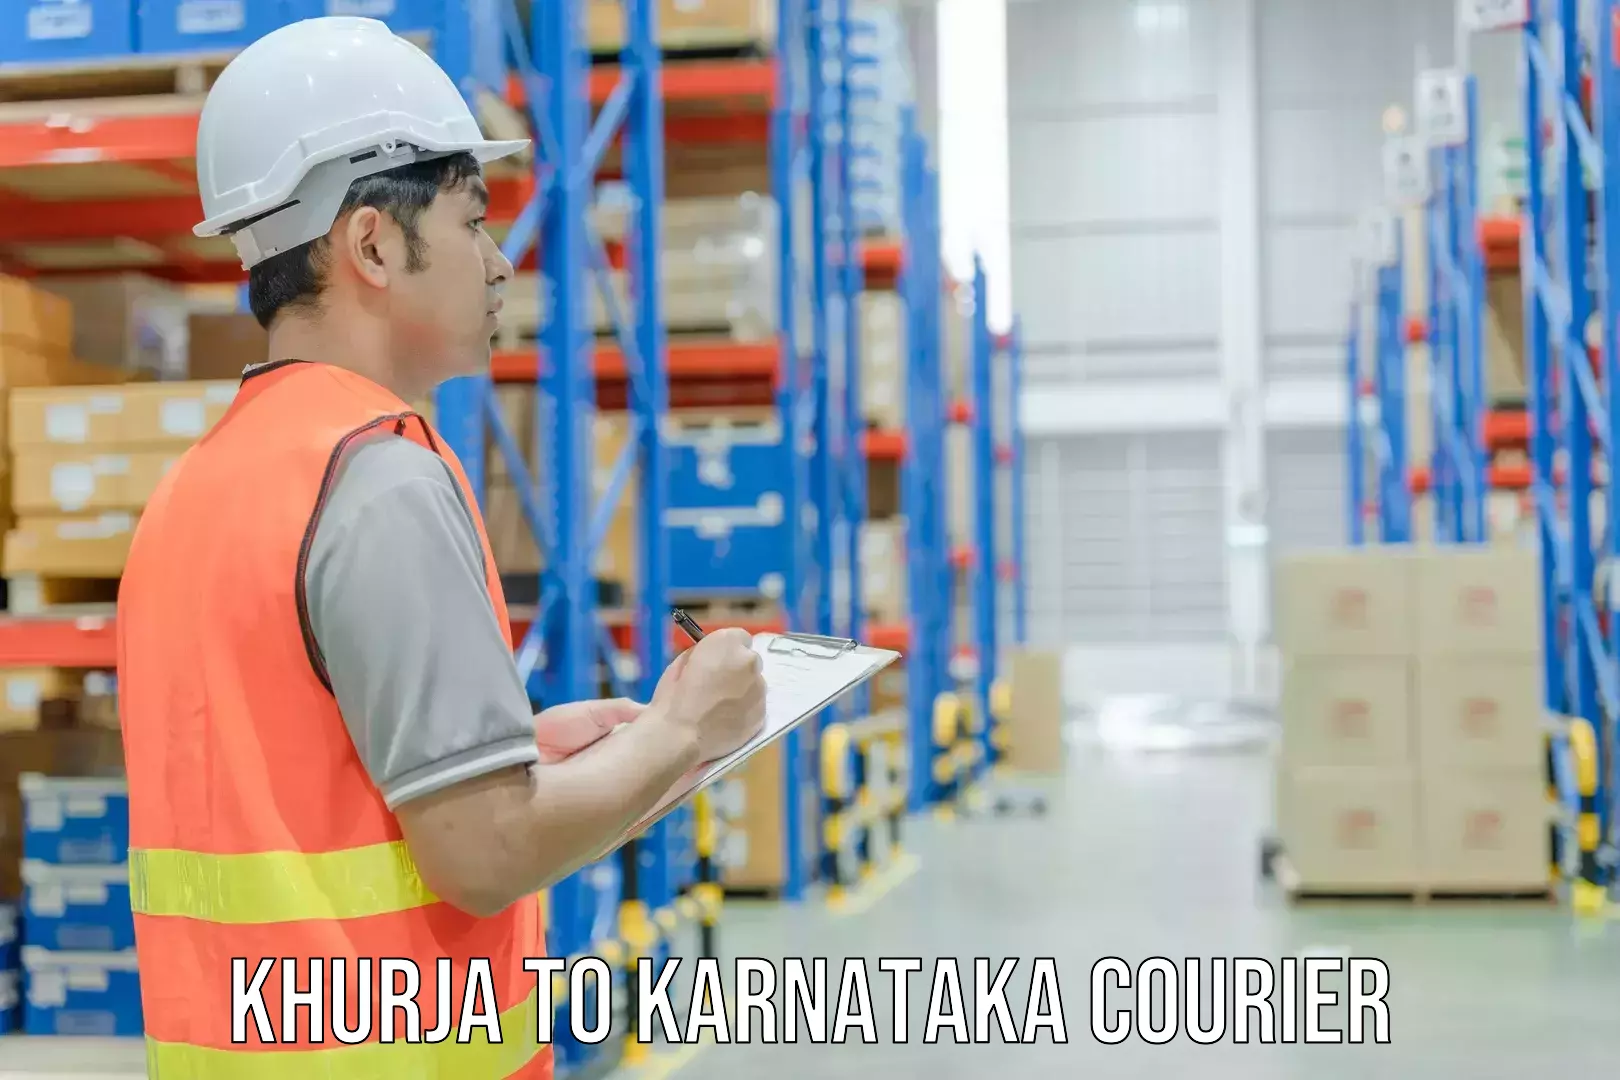 International courier networks Khurja to Basavanagudi